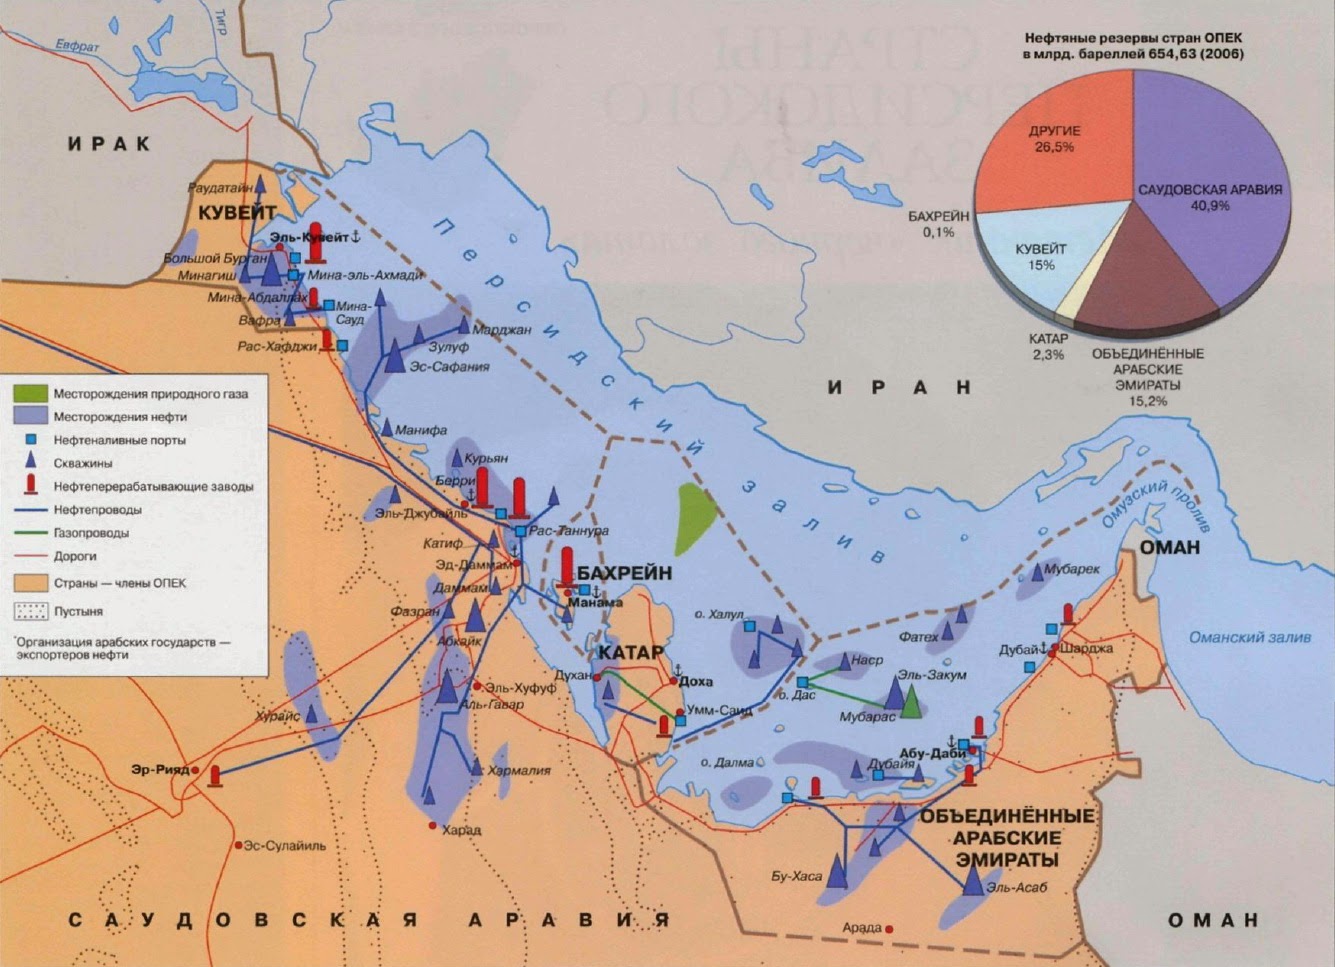 Страны персидского залива нефть. Месторождения нефти в персидском заливе карта. Нефтегазоносный бассейн Персидского залива. Нефтяные месторождения Саудовской Аравии на карте. Карта нефтяных месторождений Персидского залива.